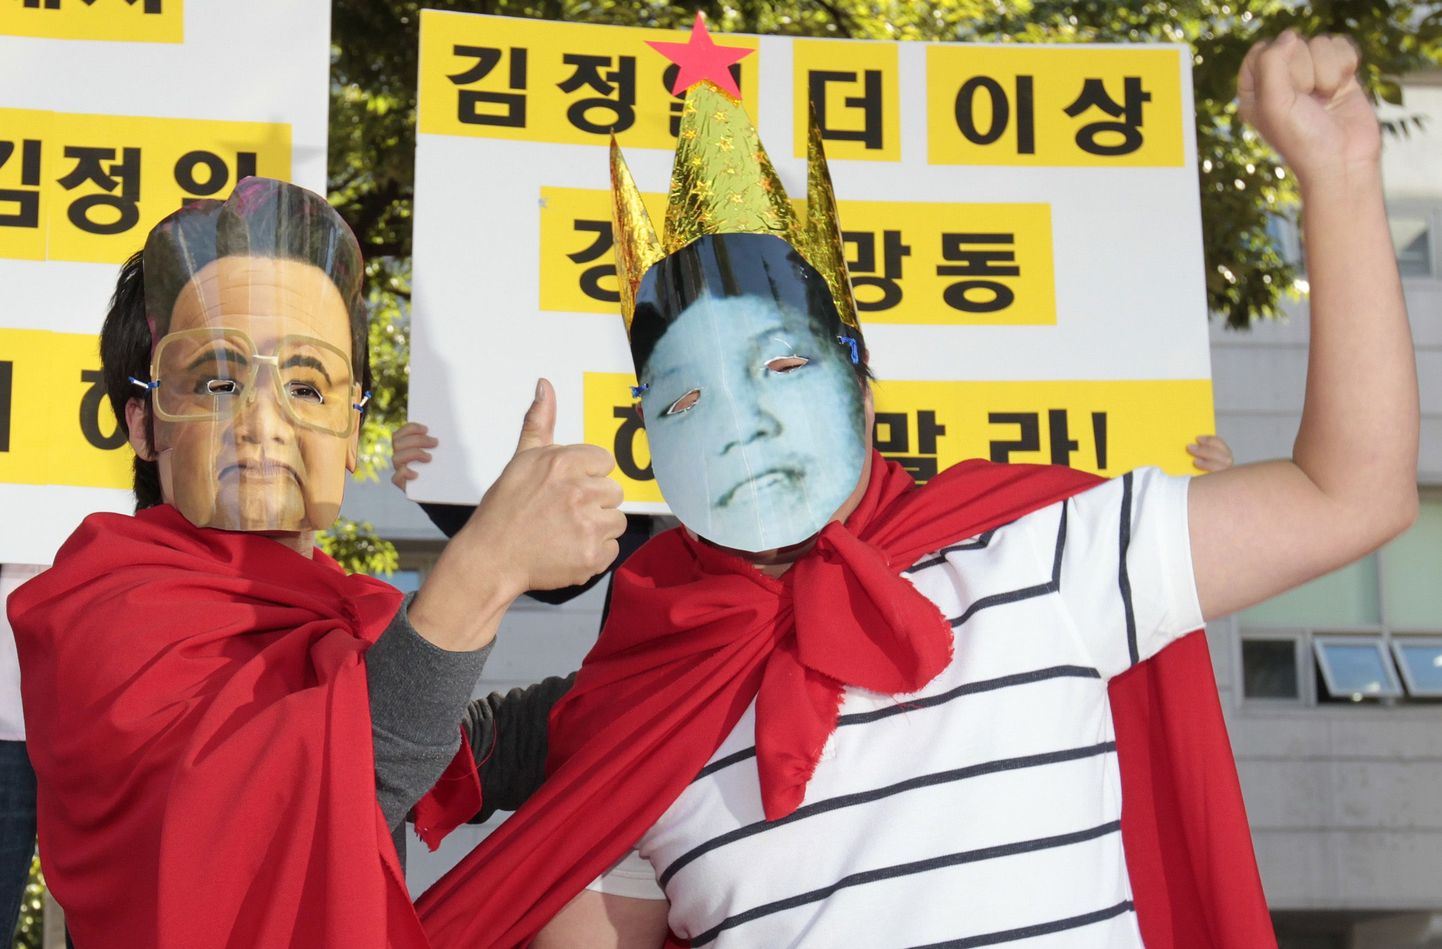 Soulis toimunud aktsioonil kandsid inimesed Põhja-Korea liidri Kim Jong-ili ja tema poja Kim Jong-uni näopiltidega maske.